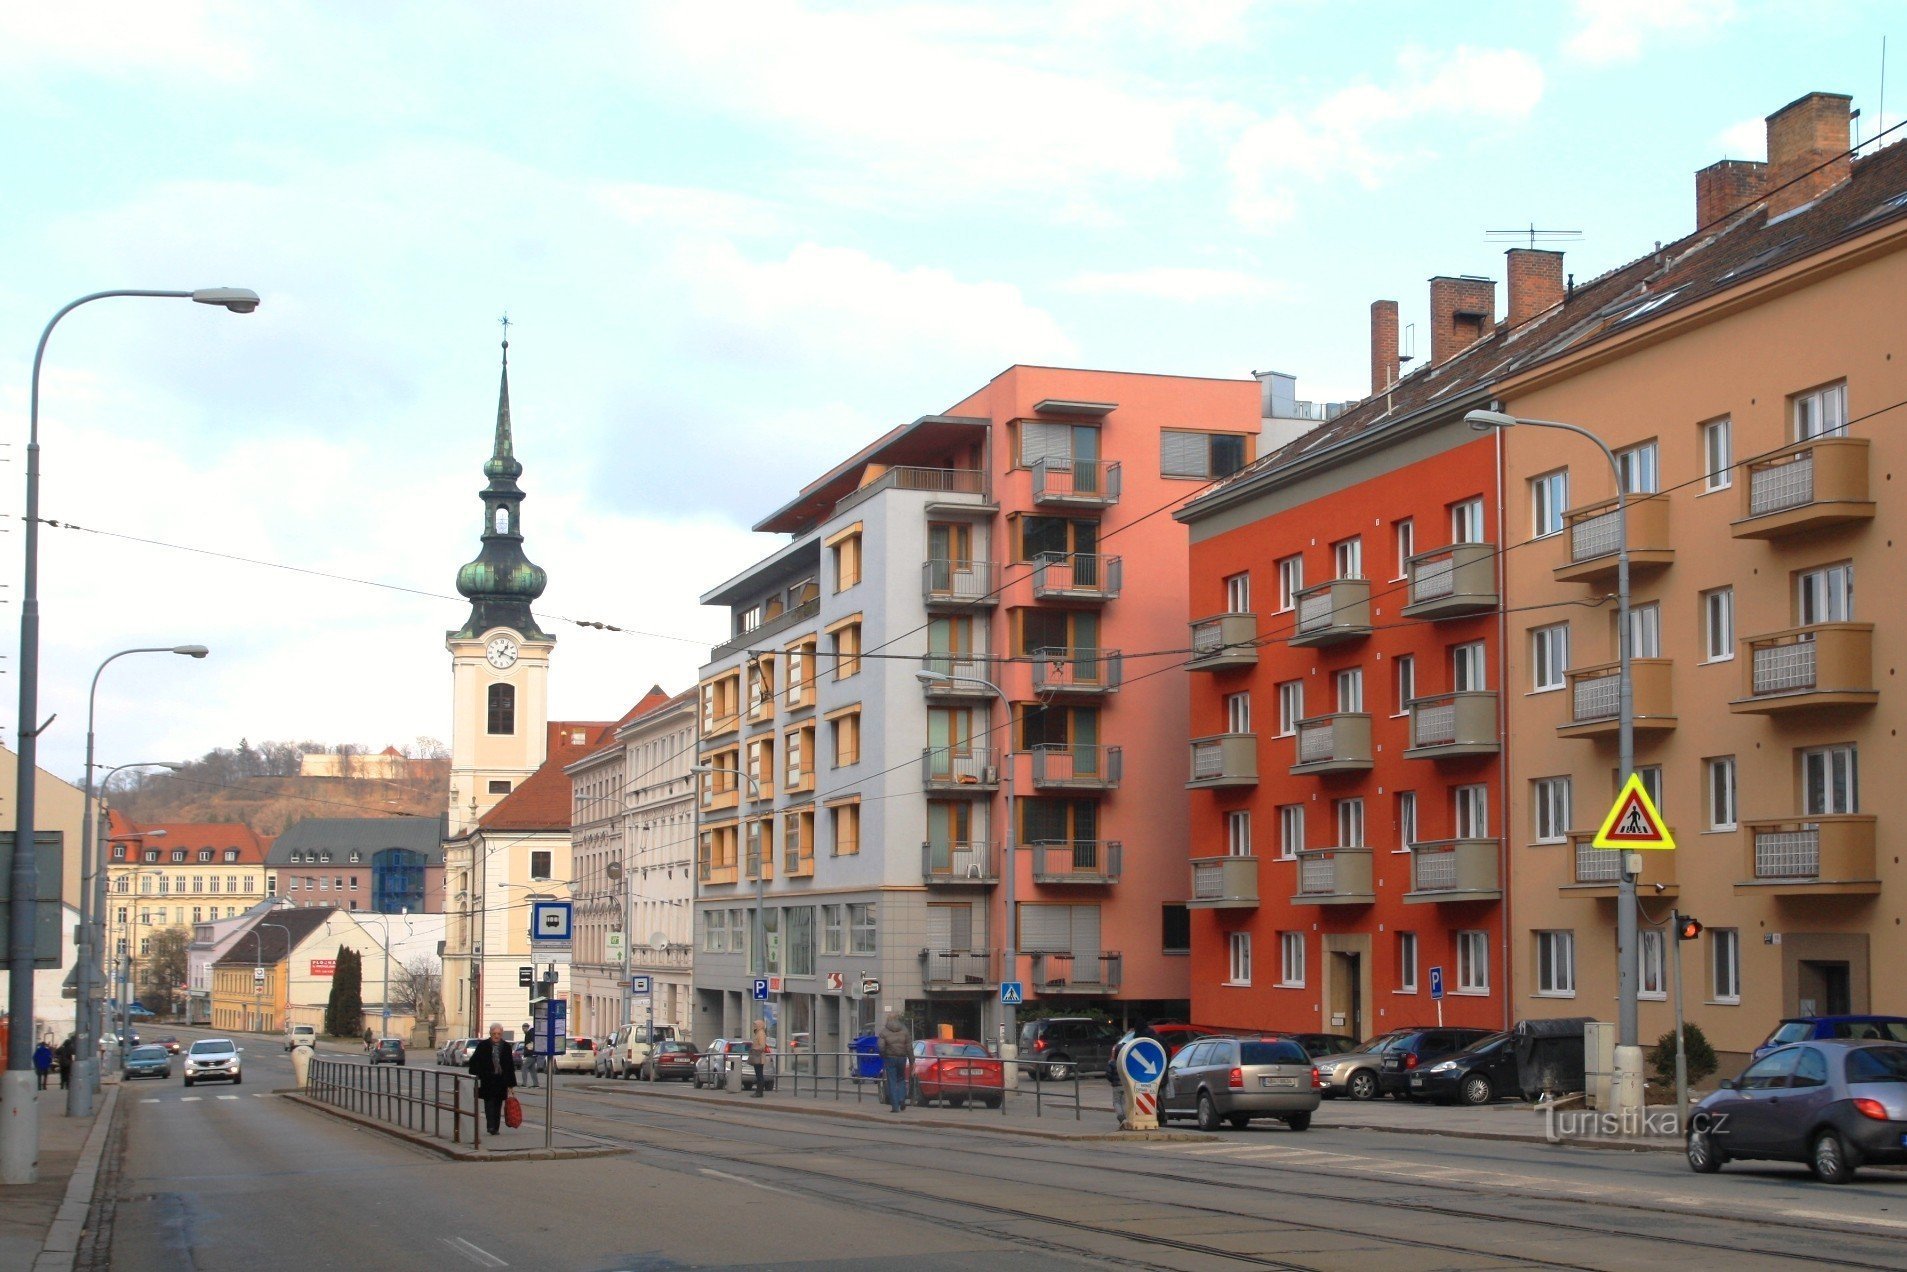 Stațiile de transport public ale Fraților Milostivi pe strada Vídeňská, în fundal turnul Bisericii Sf. Leopold